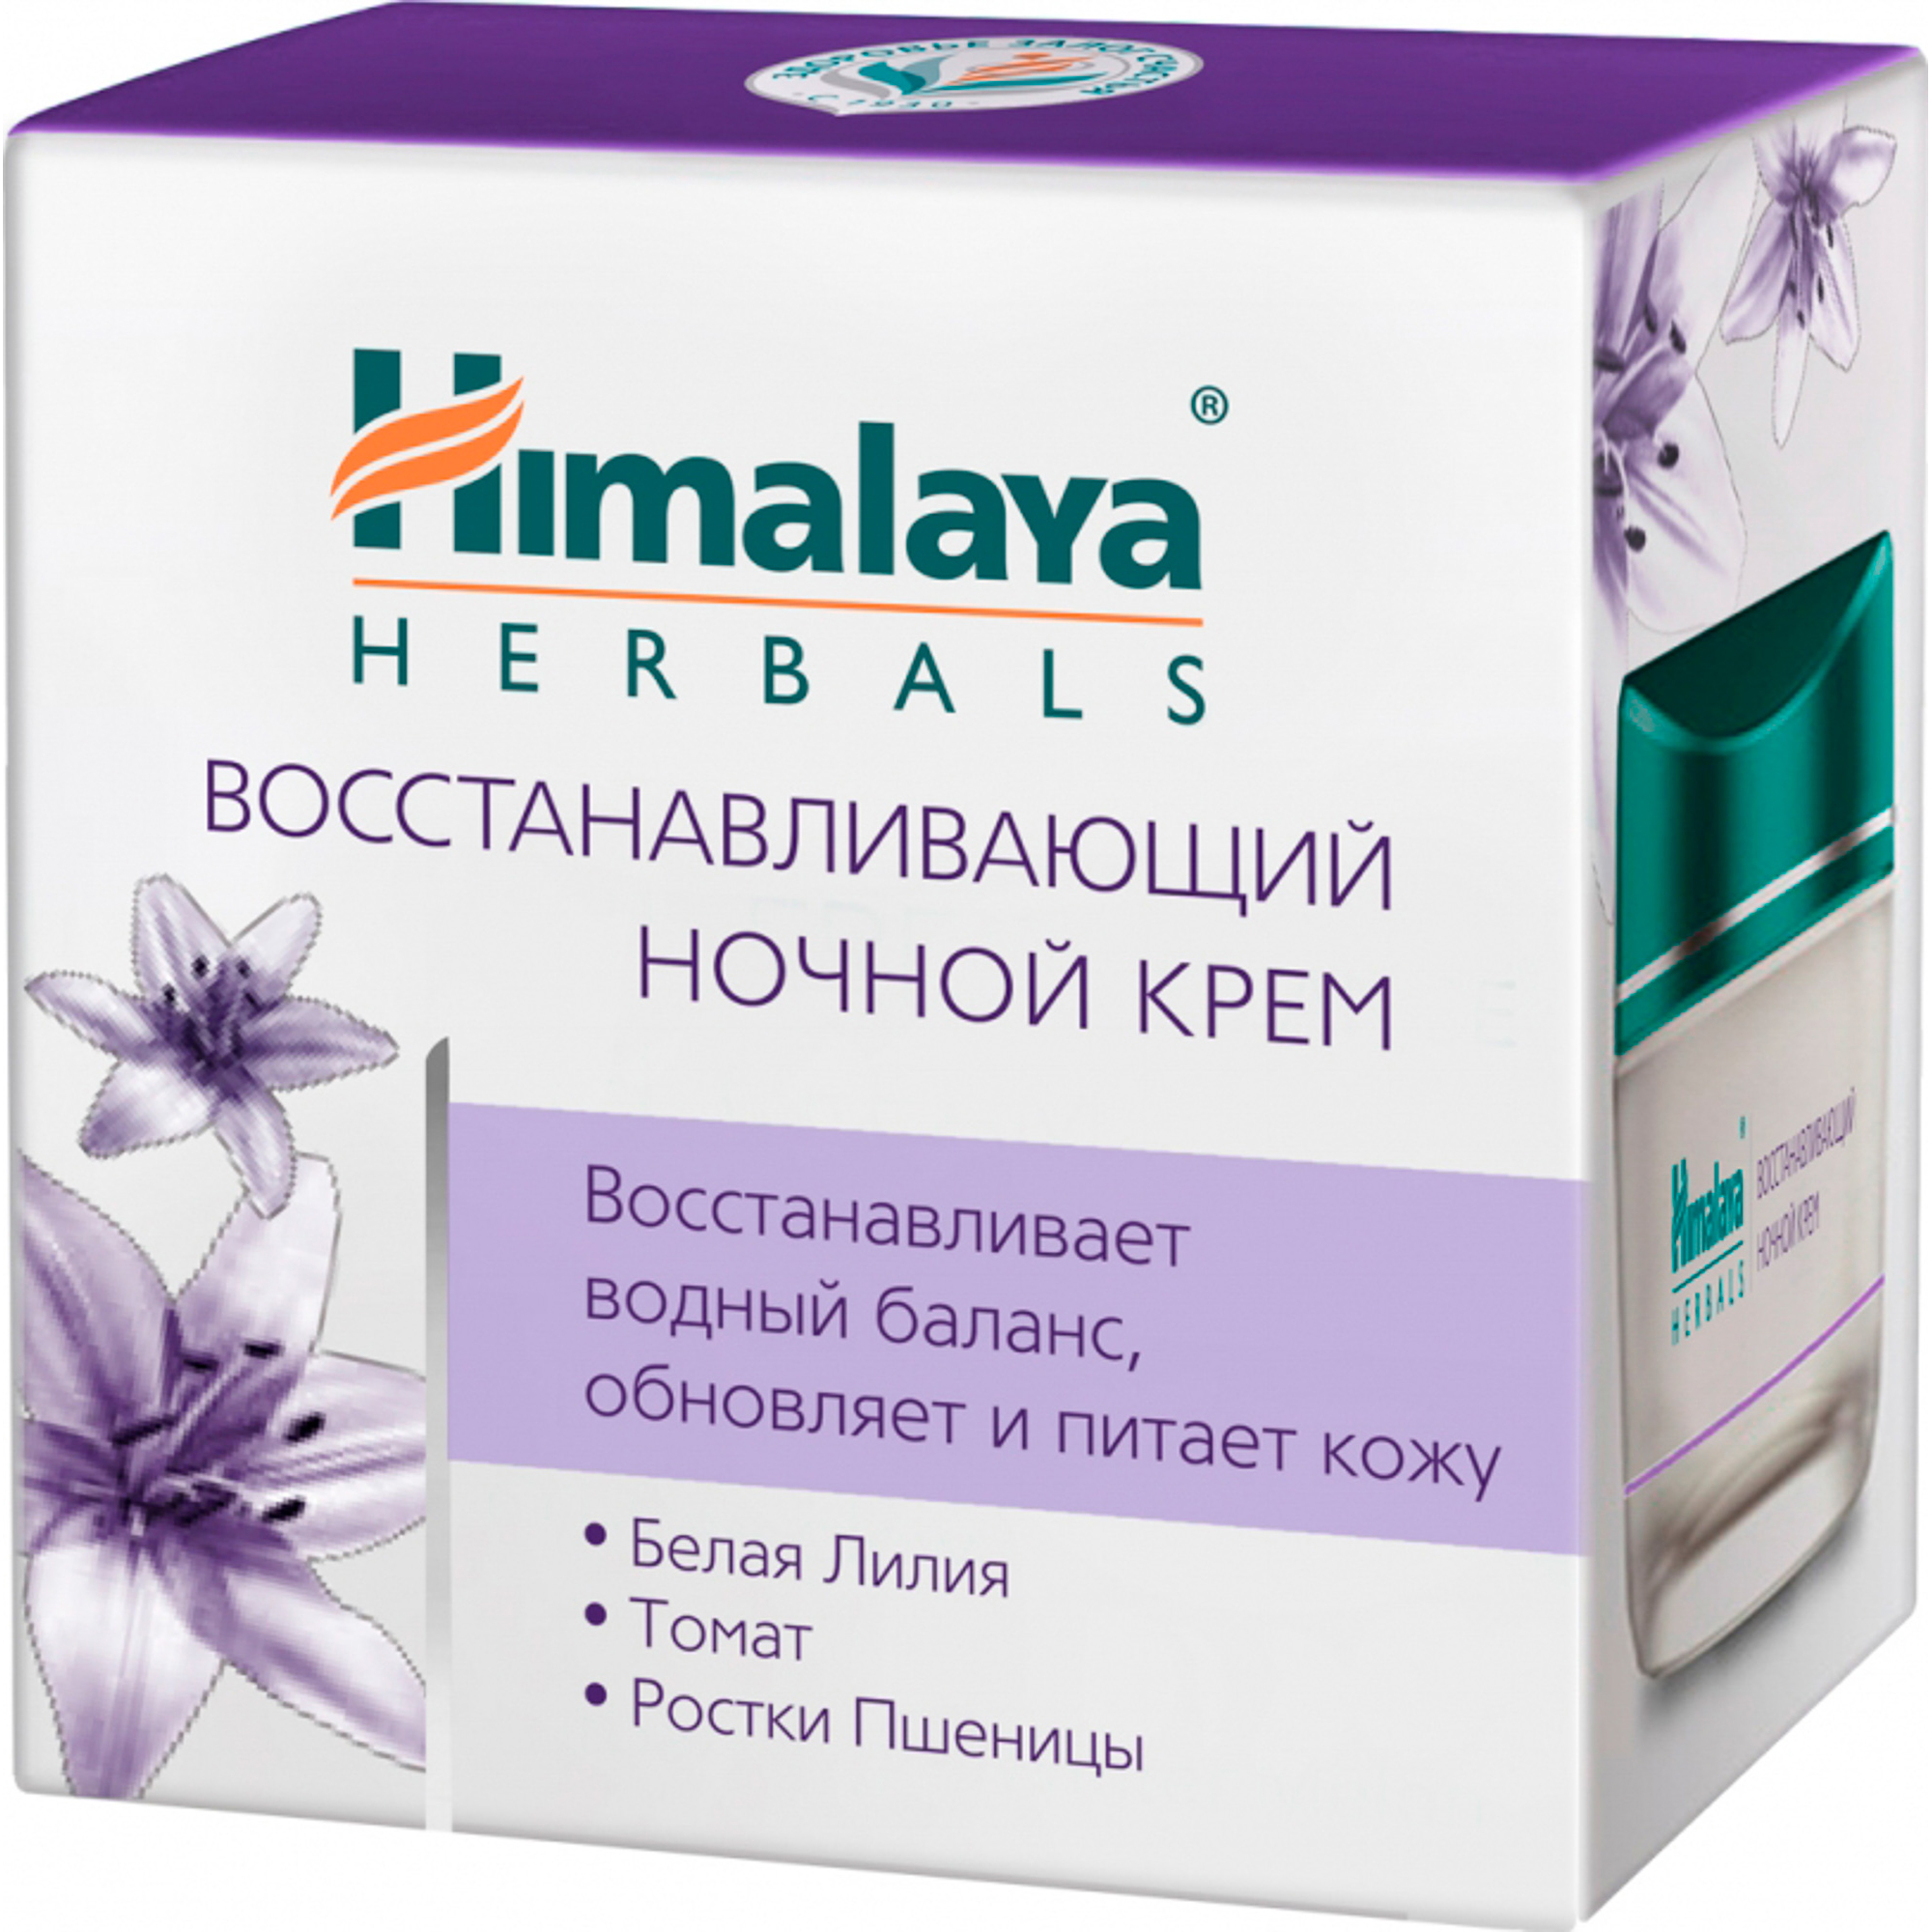 Крем для лица Himalaya Herbals Восстанавливающий Ночной 50 мл